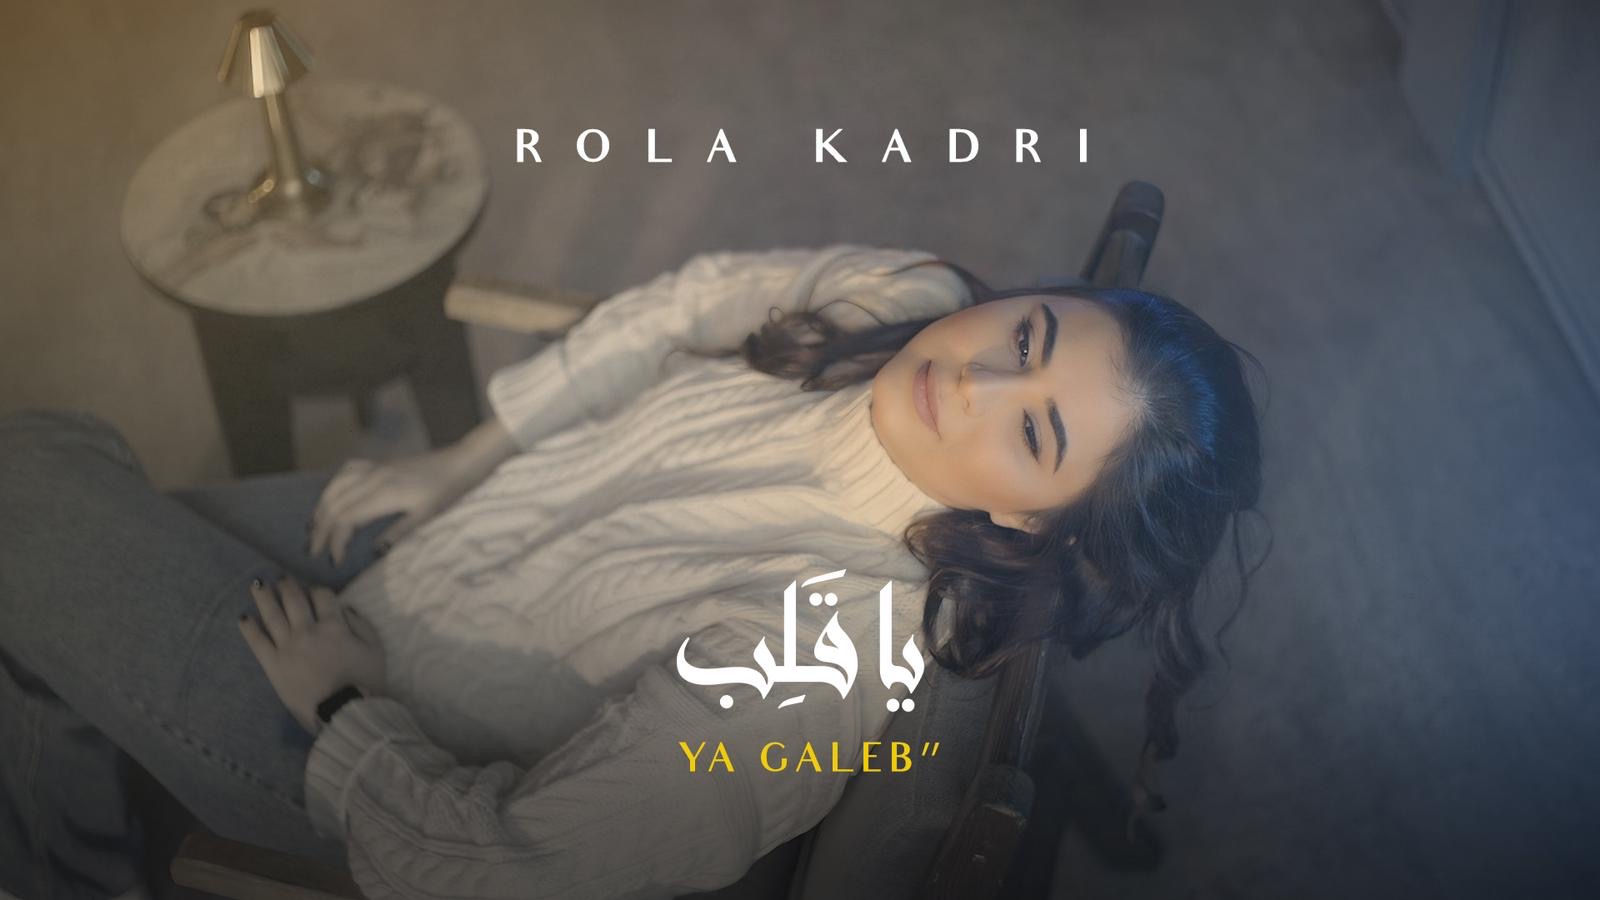 النجمة اللبنانية رولا قادري تعود من جديد بأغنية “يا قلب”